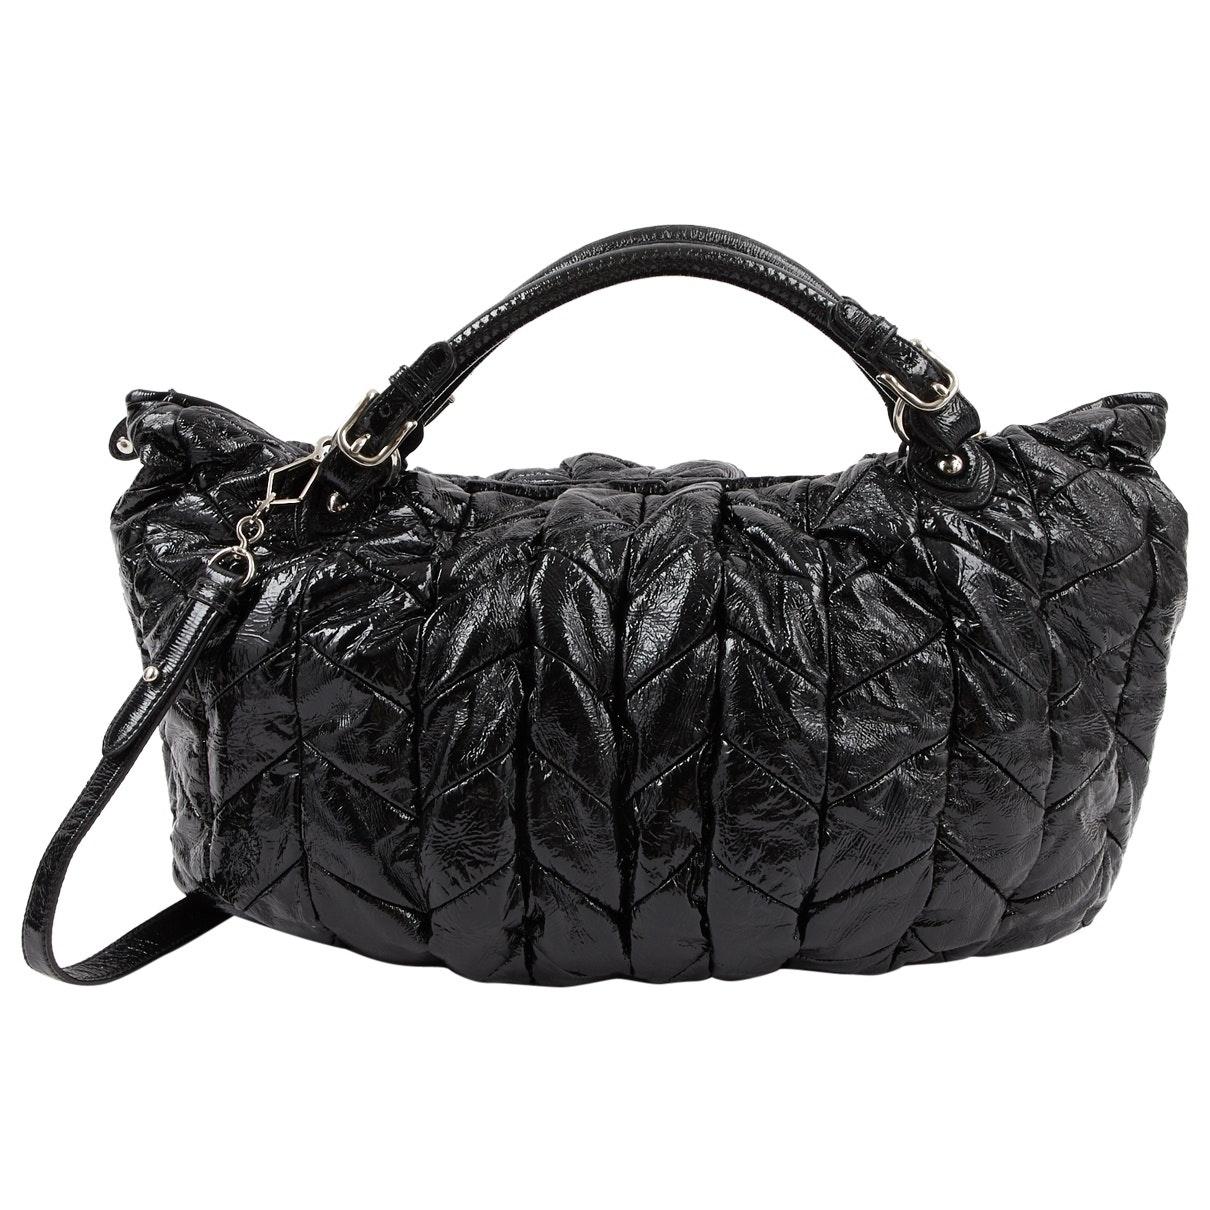 Miu Miu \n Black Patent Leather Handbag - Lyst